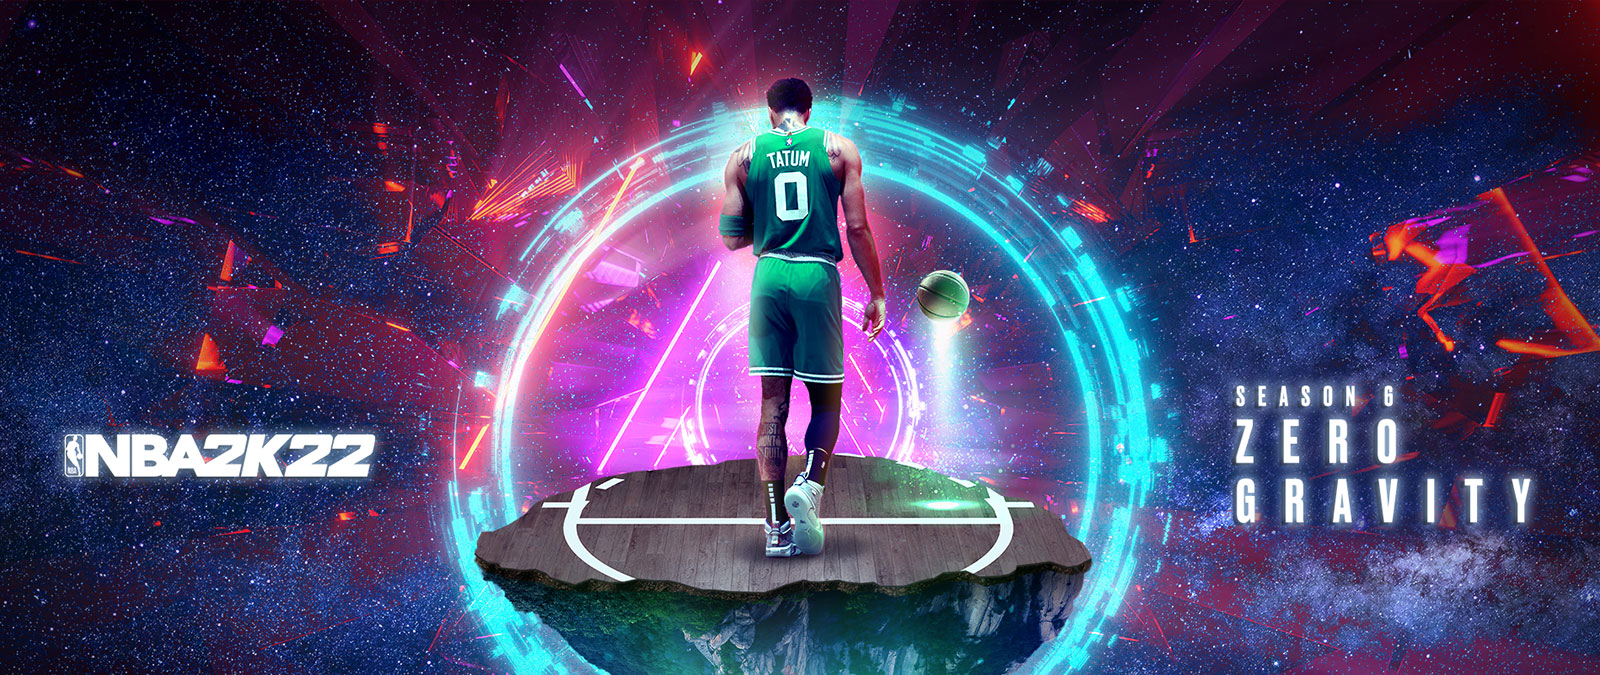 NBA 2K22, Season 6 Zero Gravity, Tatum staat op een zwevend stuk van een basketbalveld in de ruimte, omgeven door ringen van energie.